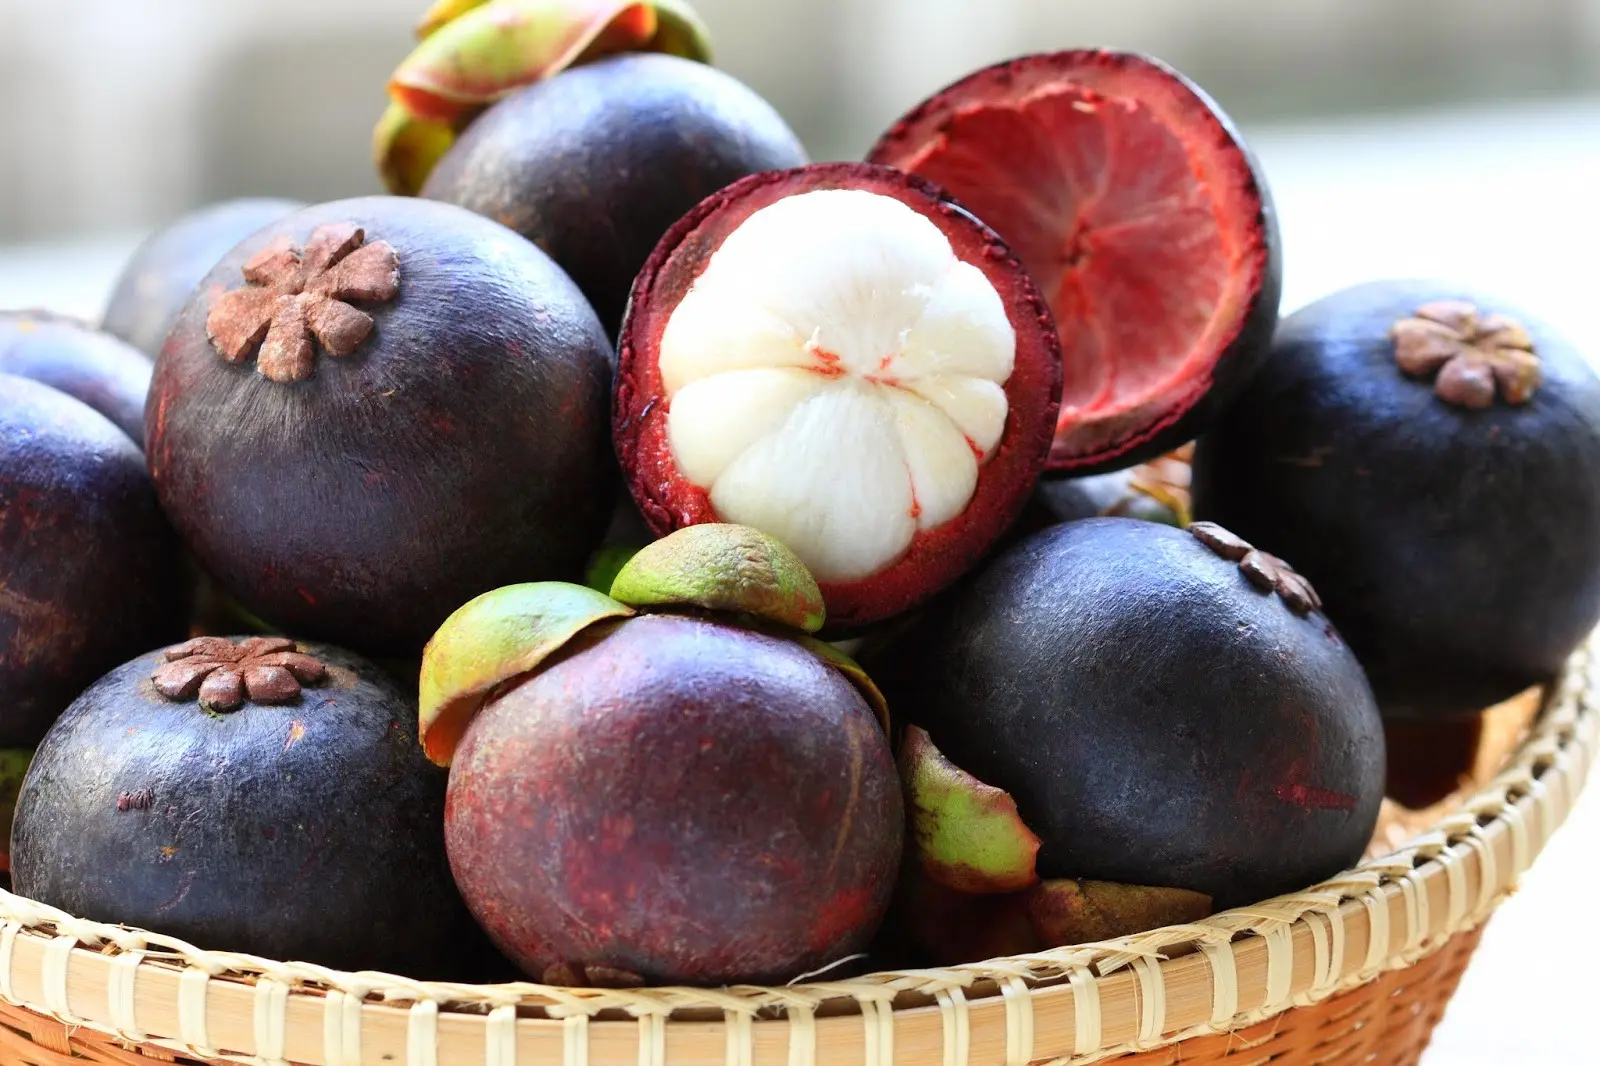 Jangan sampai nggak tahu khasiat buah manggis yang bisa kabulkan mimpi para cewek ini, ya! (Sumber Foto: healthyt1ps.com)